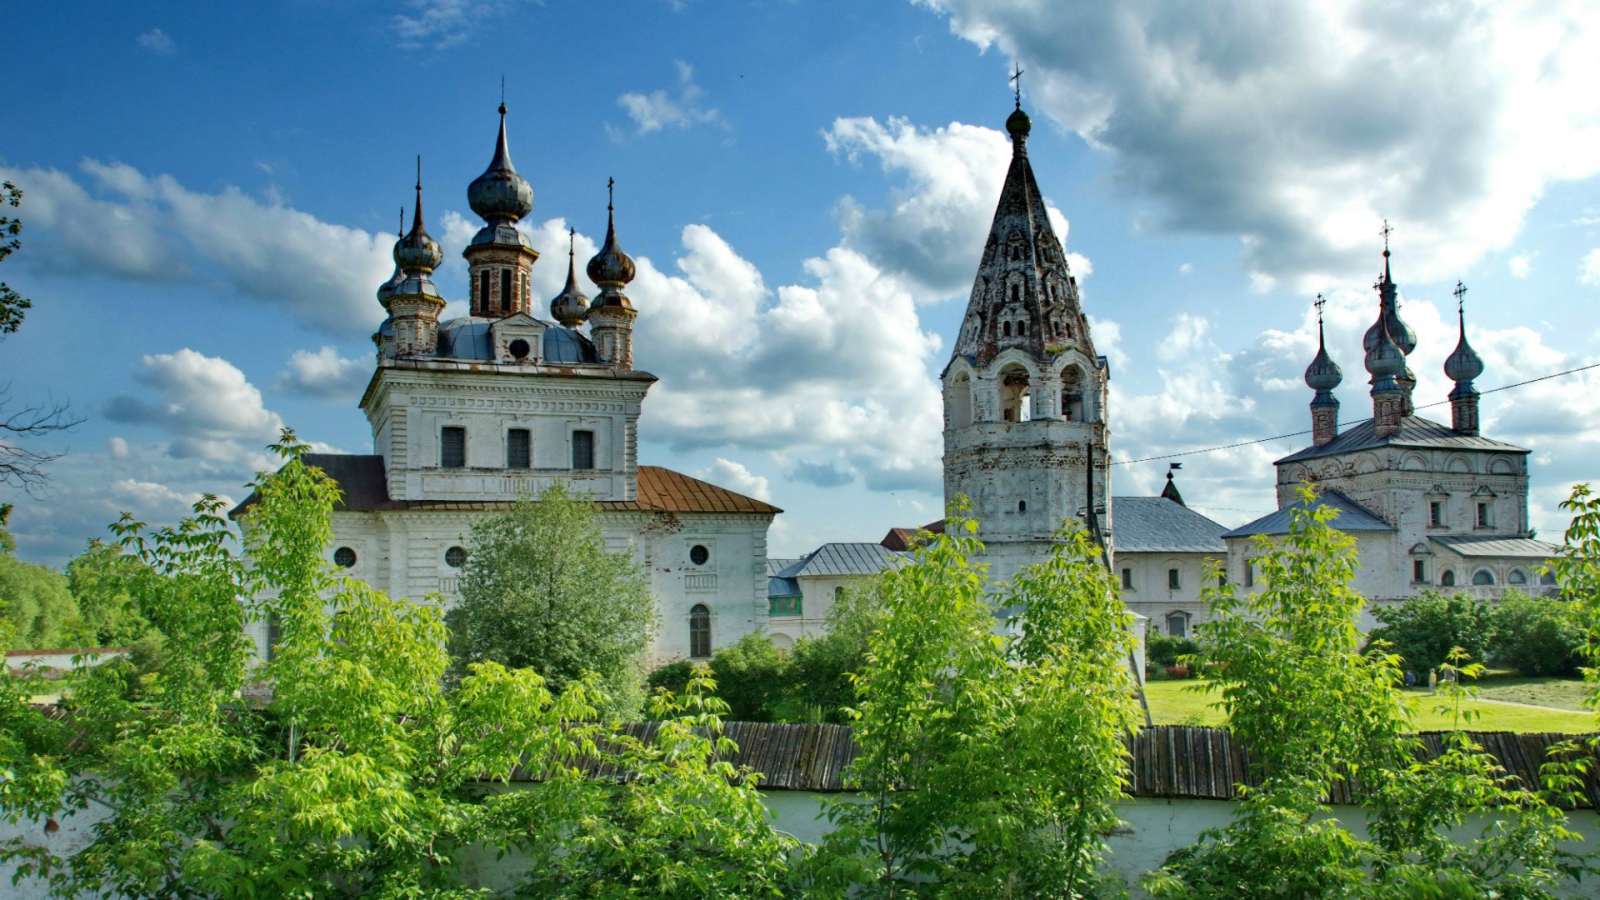 Михайло-Архангельский монастырь в г. Юрьев-Польский, Россия